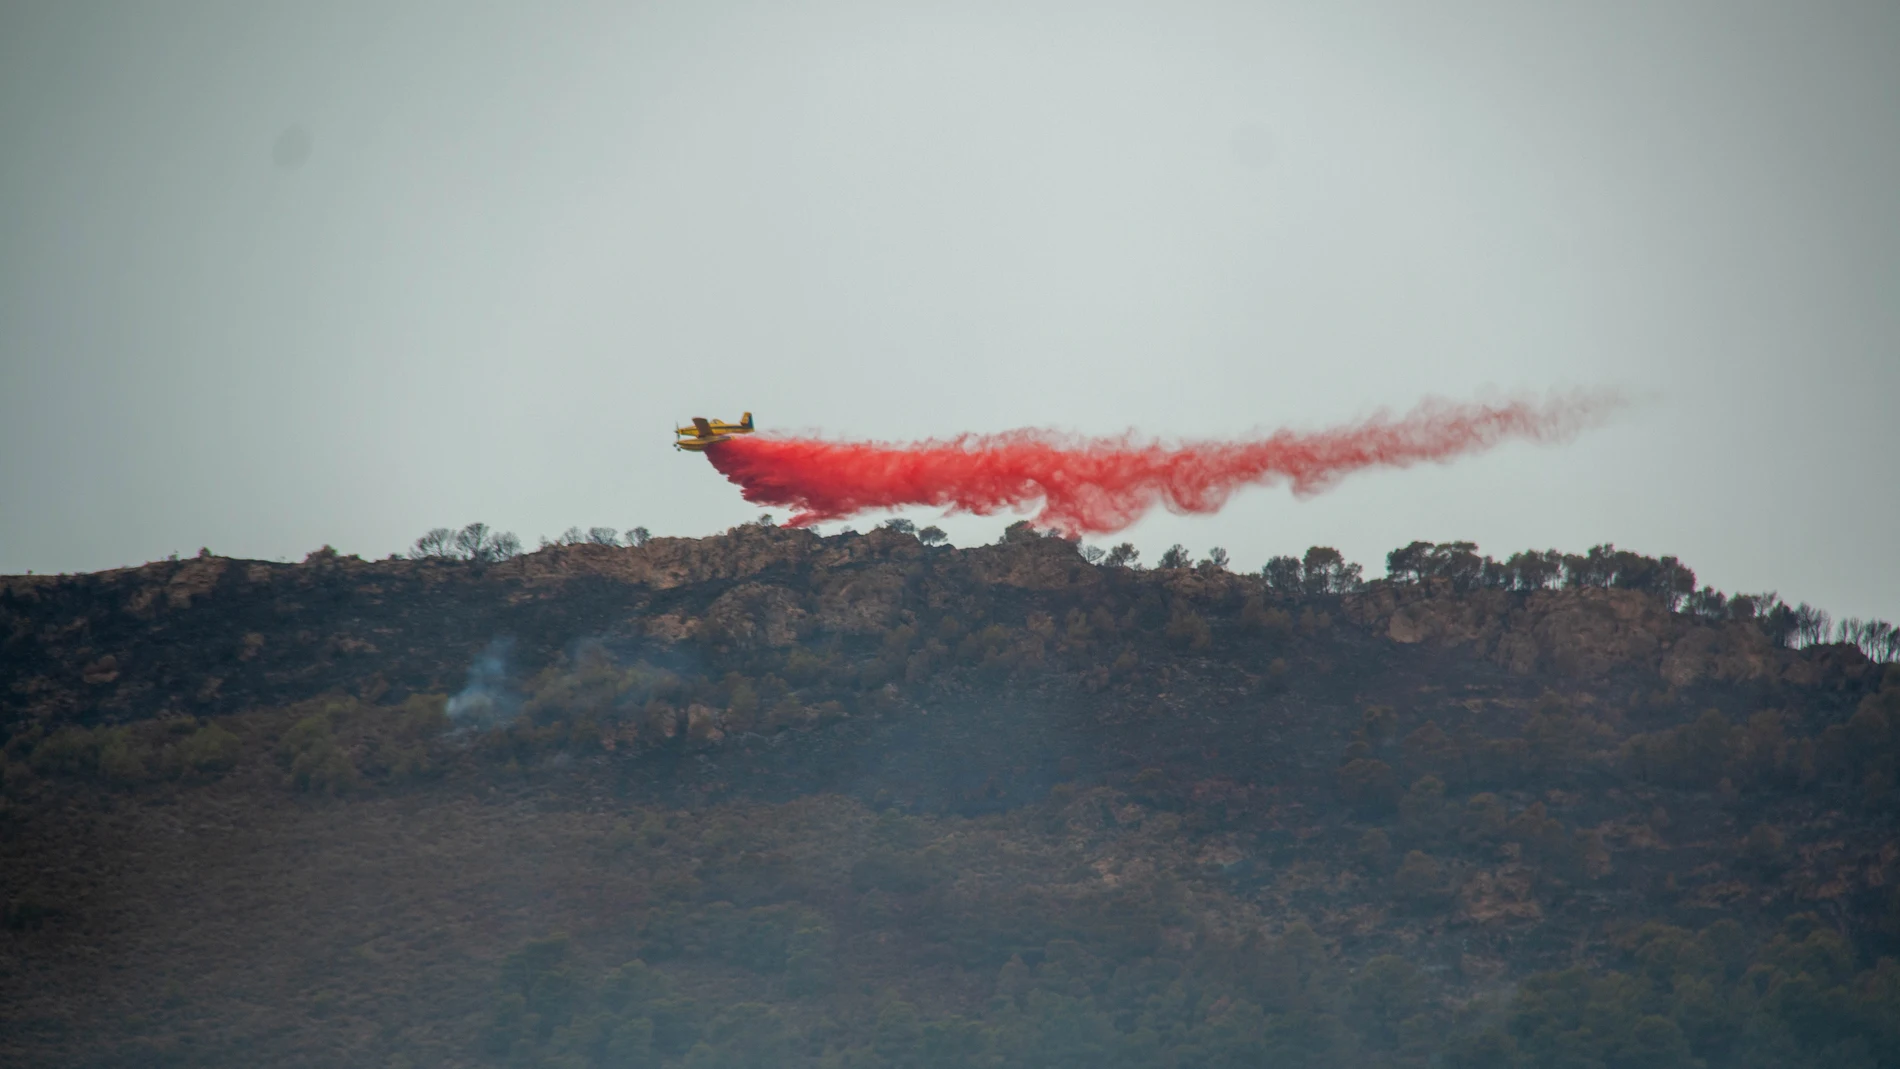 La Junta de Andalucía ha rebajado a las 14.00 horas de este martes de 1 a 0 el nivel de alerta por el incendio forestal